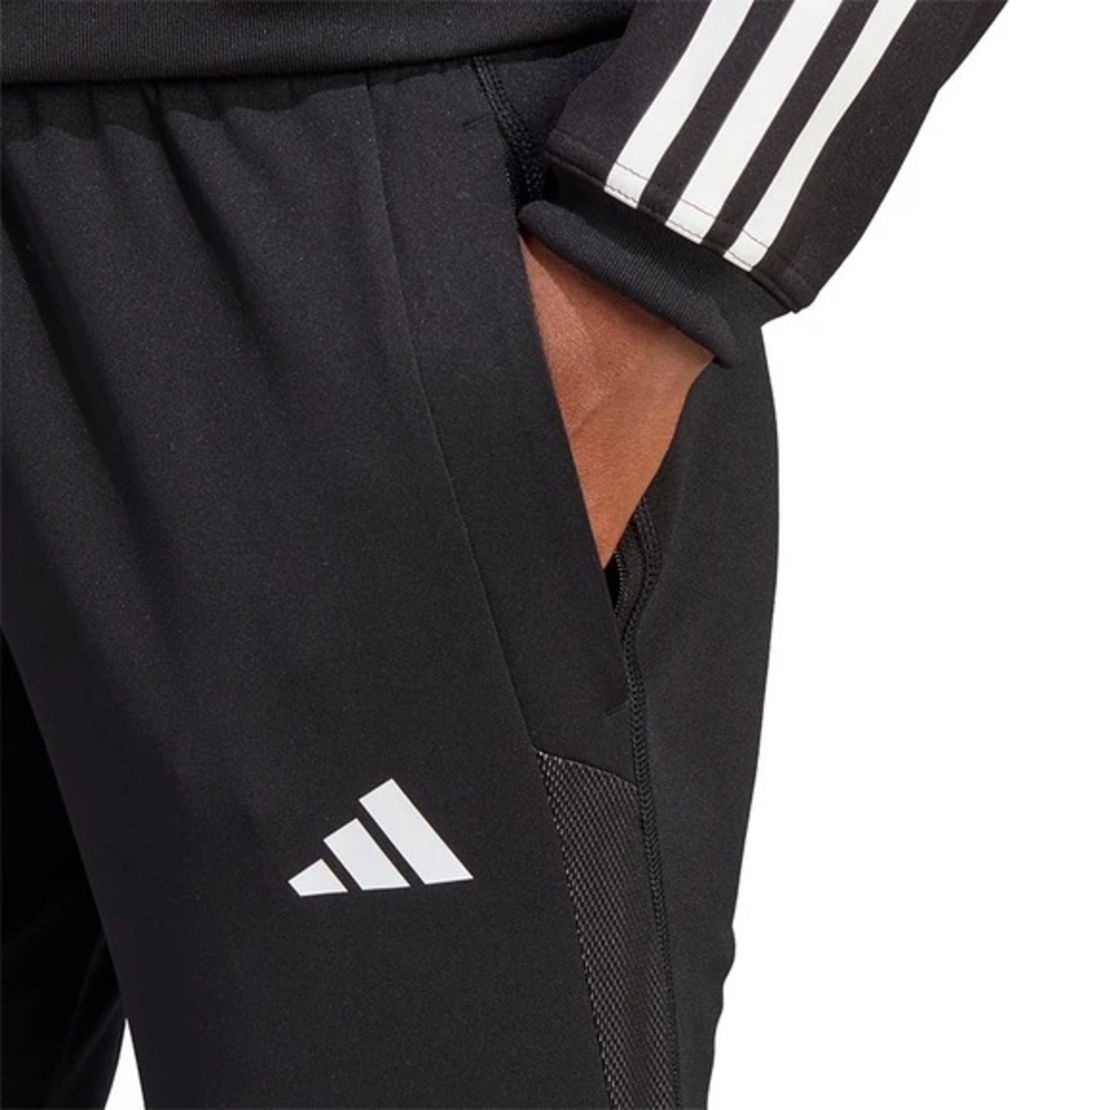 מכנס כדורגל אדידס לגבר | Adidas Tiro 23 Compatition Pant